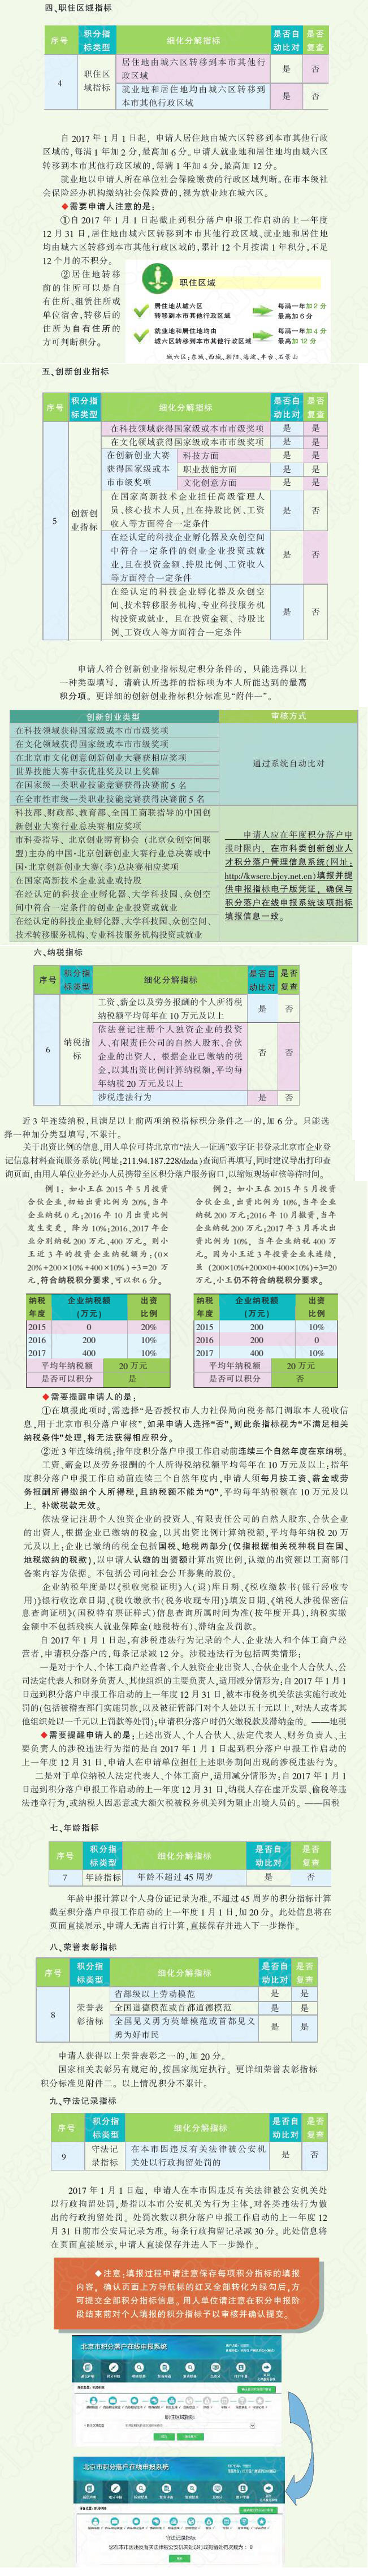 分步详解北京市积分落户分数构成2.jpg